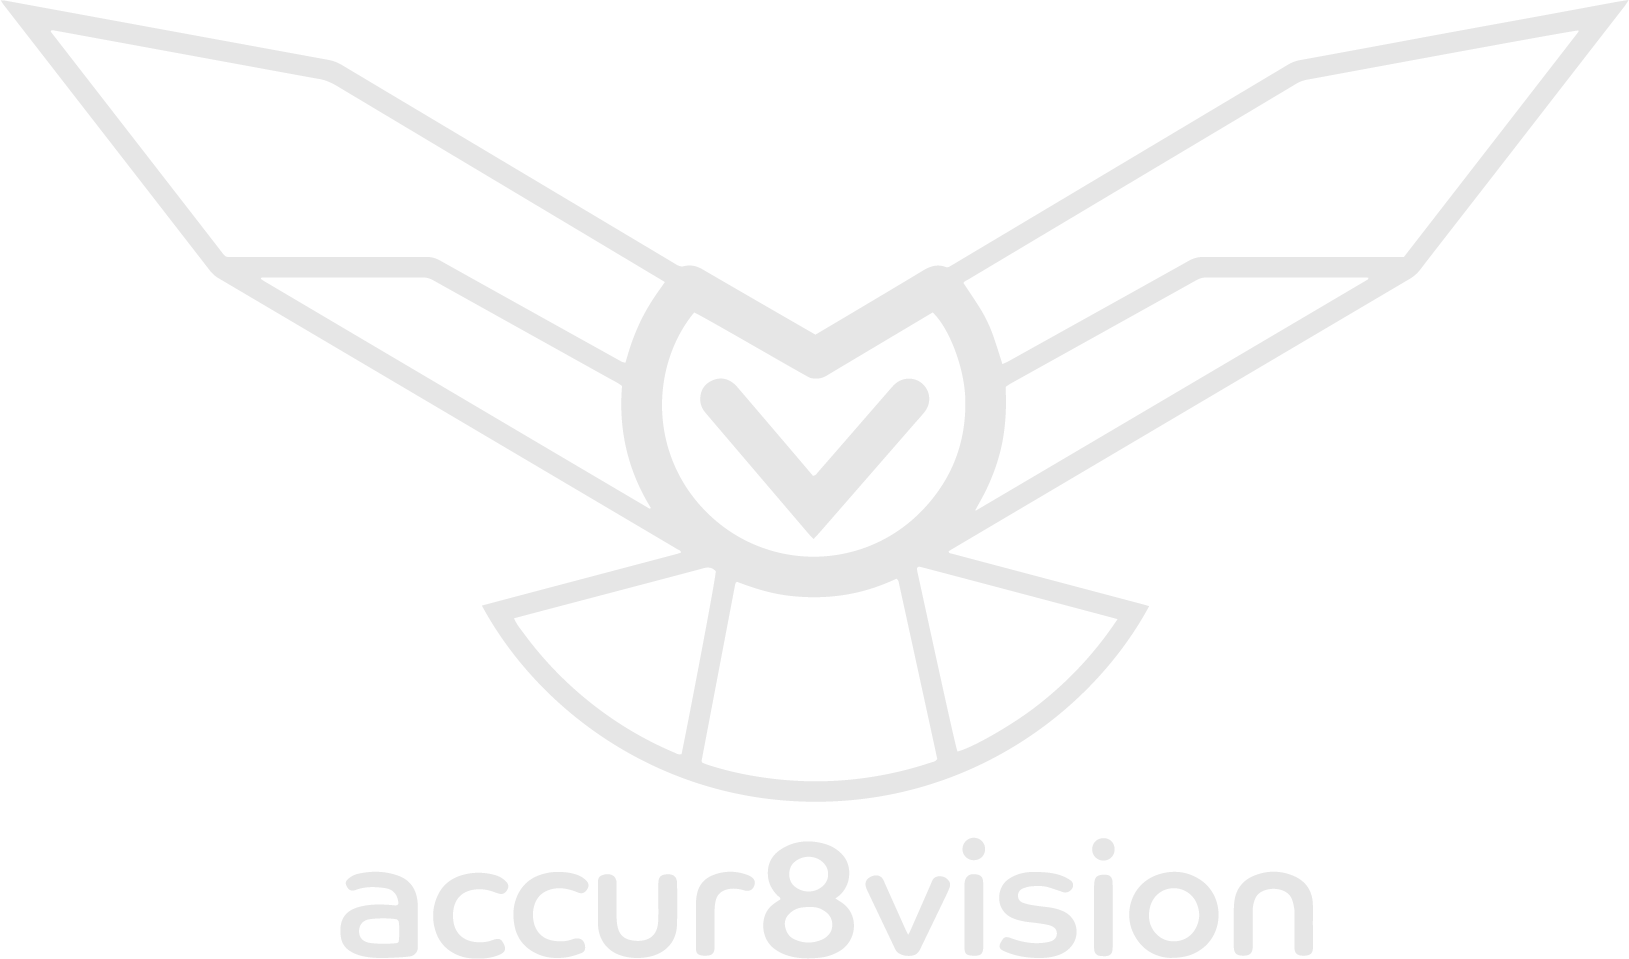 Logotipo de Accur8vision en escala de grises